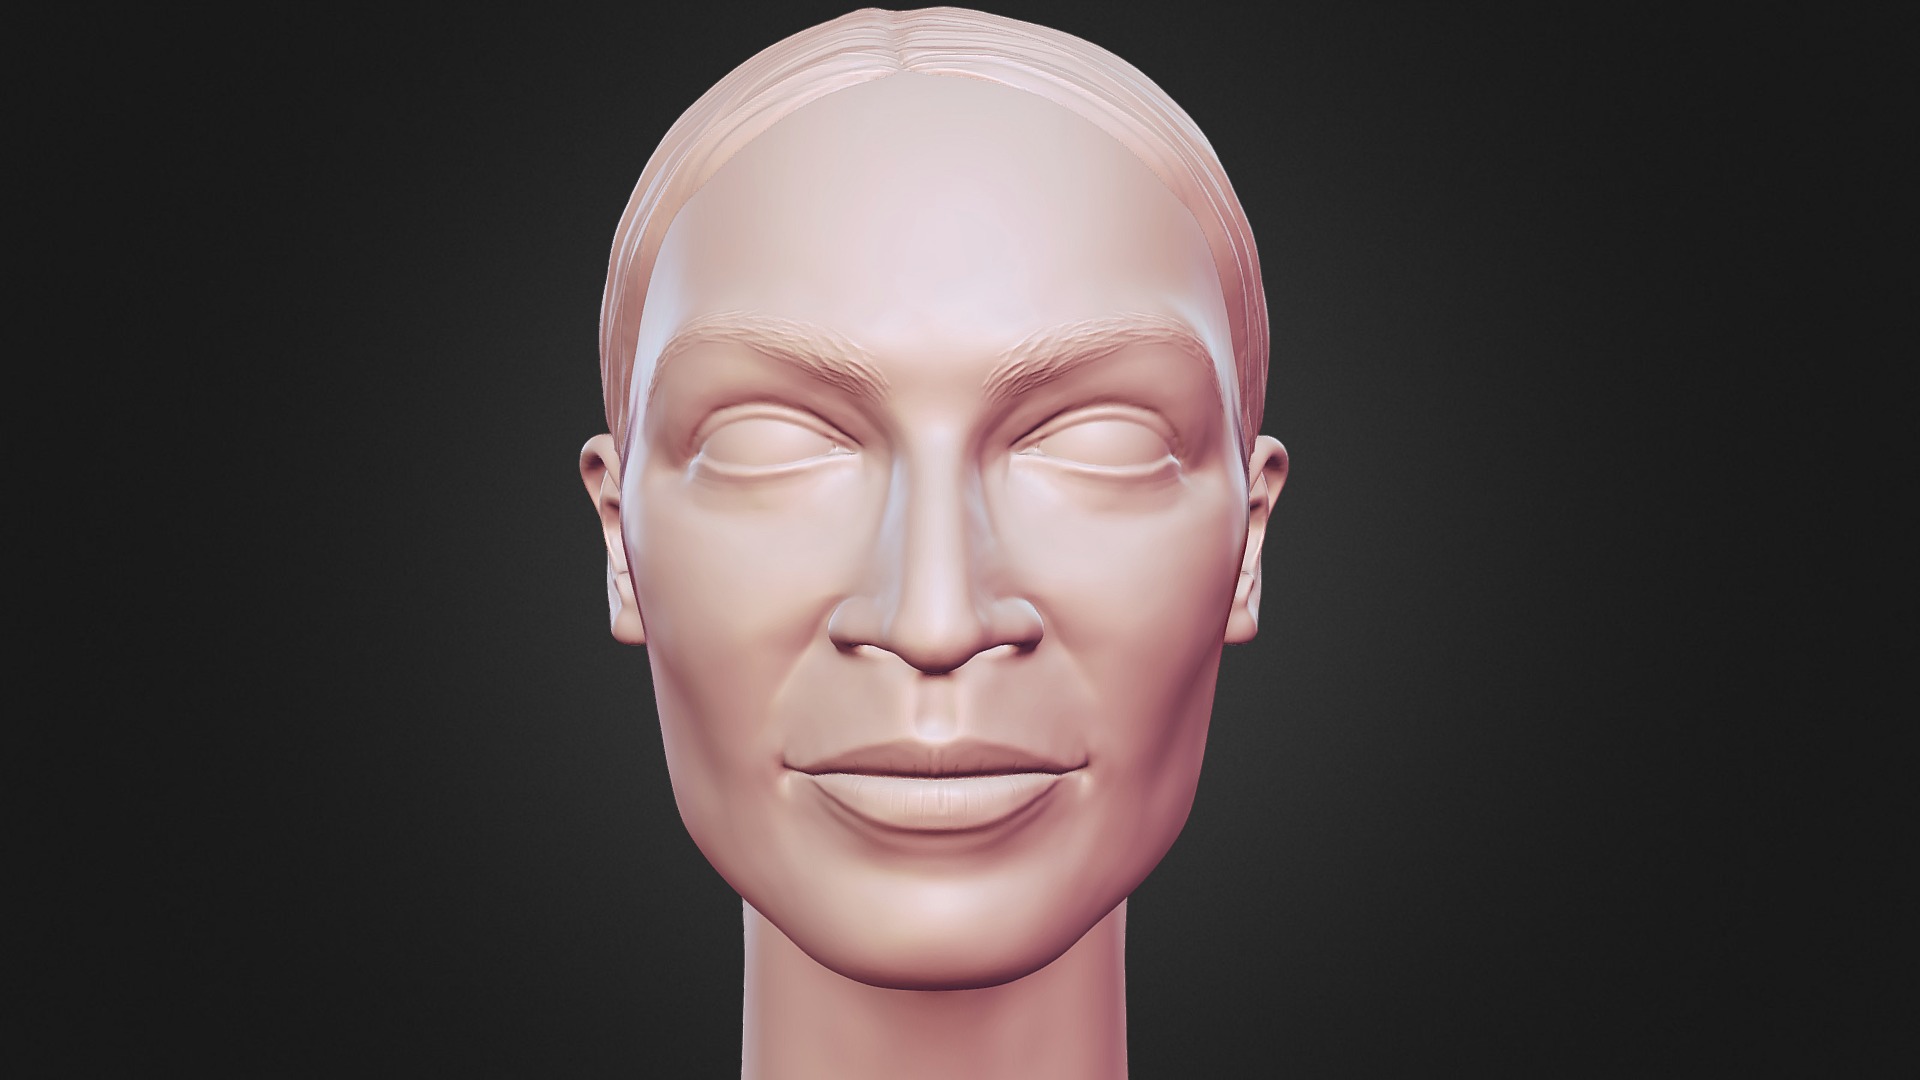 3D model Alexandria Ocasio-Cortez 3D printable portrait - This is a 3D model of the Alexandria Ocasio-Cortez 3D printable portrait. The 3D model is about a head of a person.